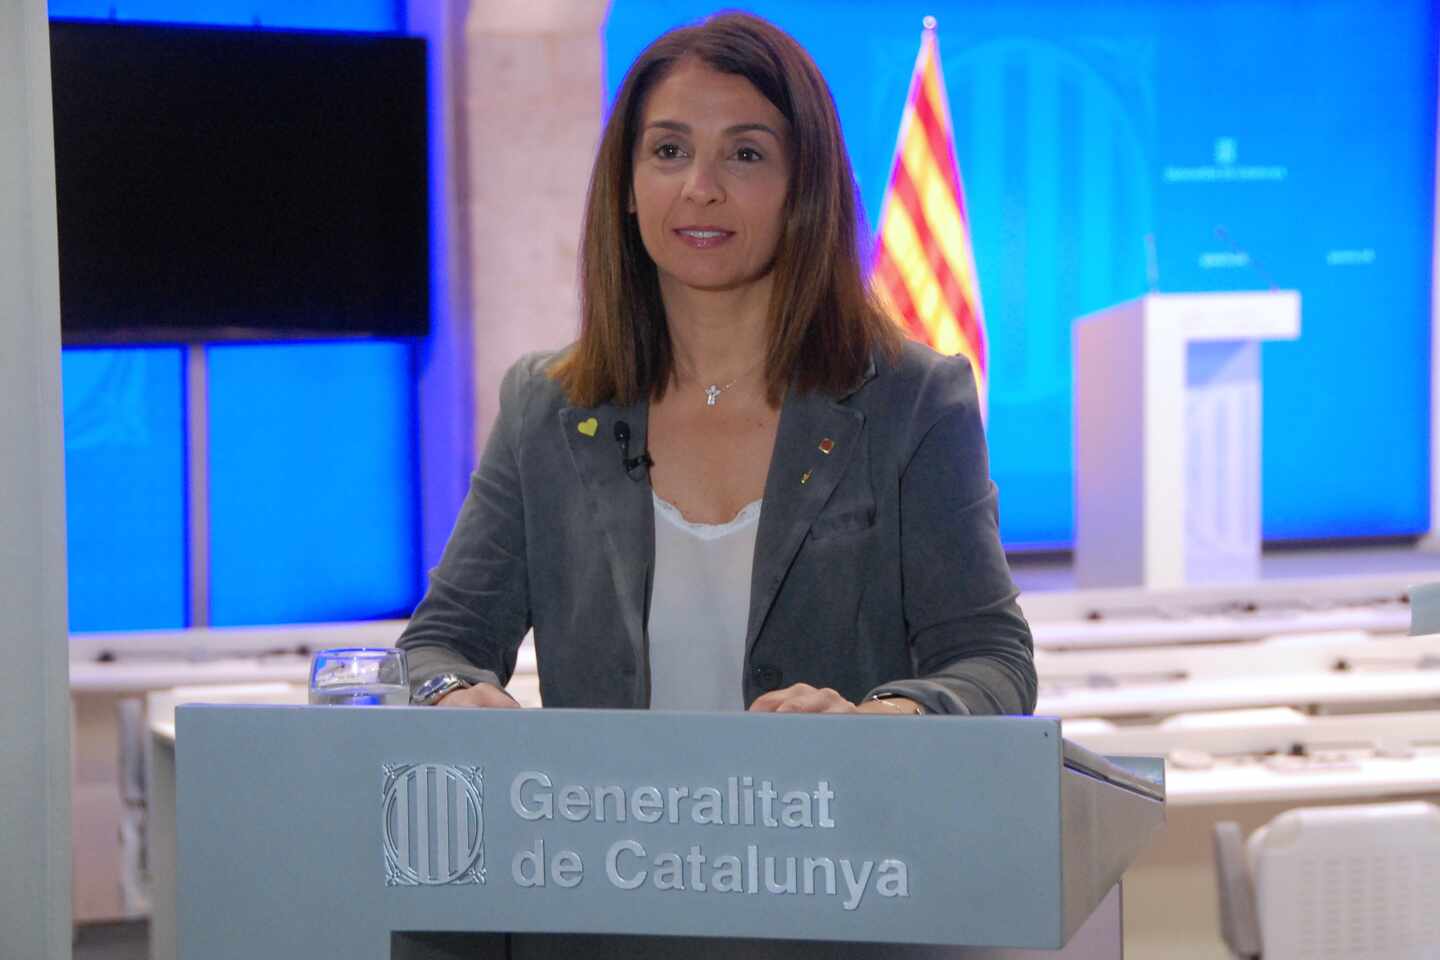 La Generalitat se autoexcluye de una comisión del Senado "convocada por el PP"